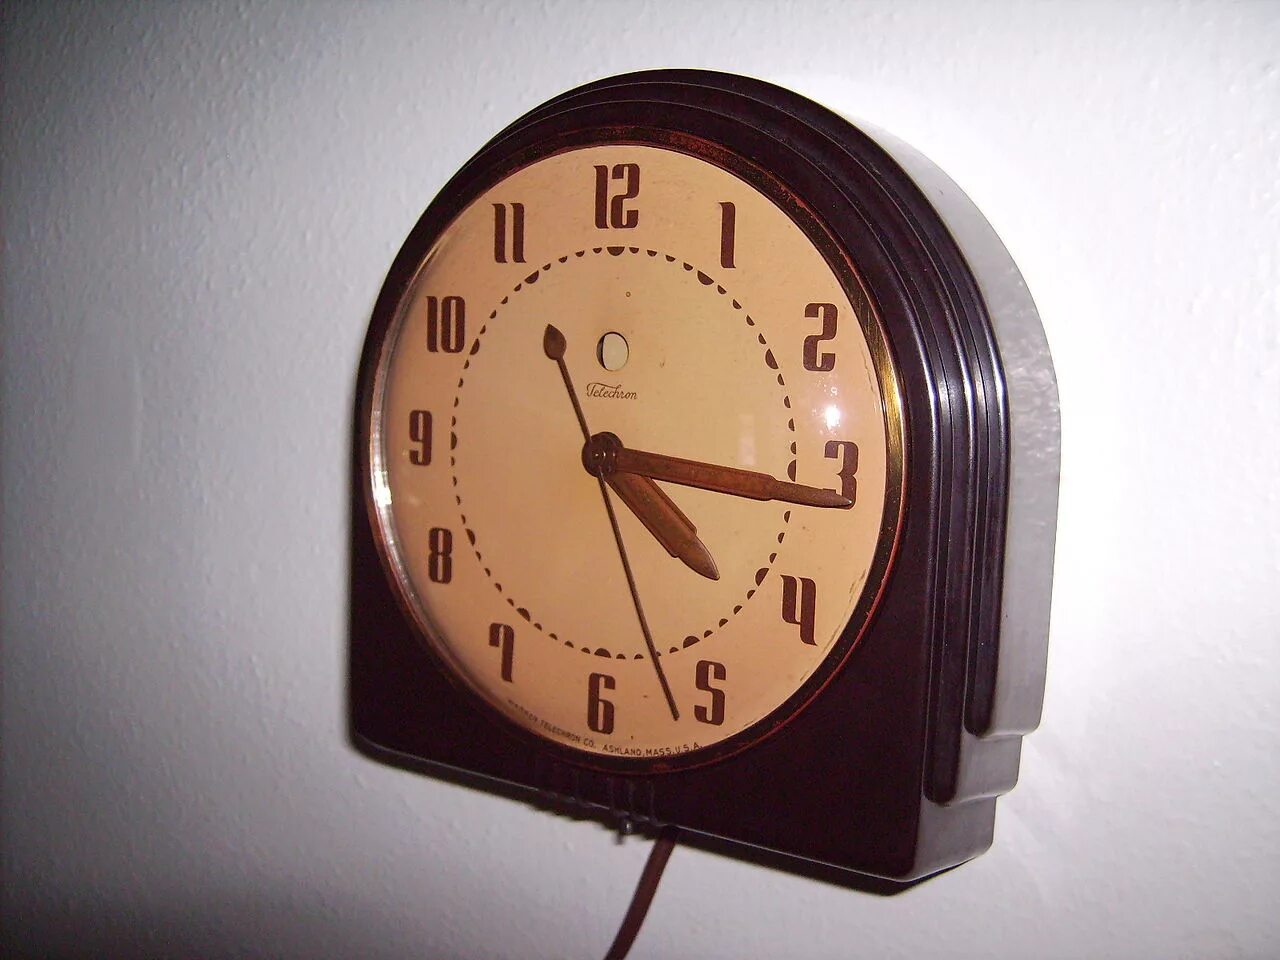 Сделай часы тусклее. Электрические часы Бейна 1847. А. Бейн электрические часы. Первые электрические часы. Старые и современные часы.